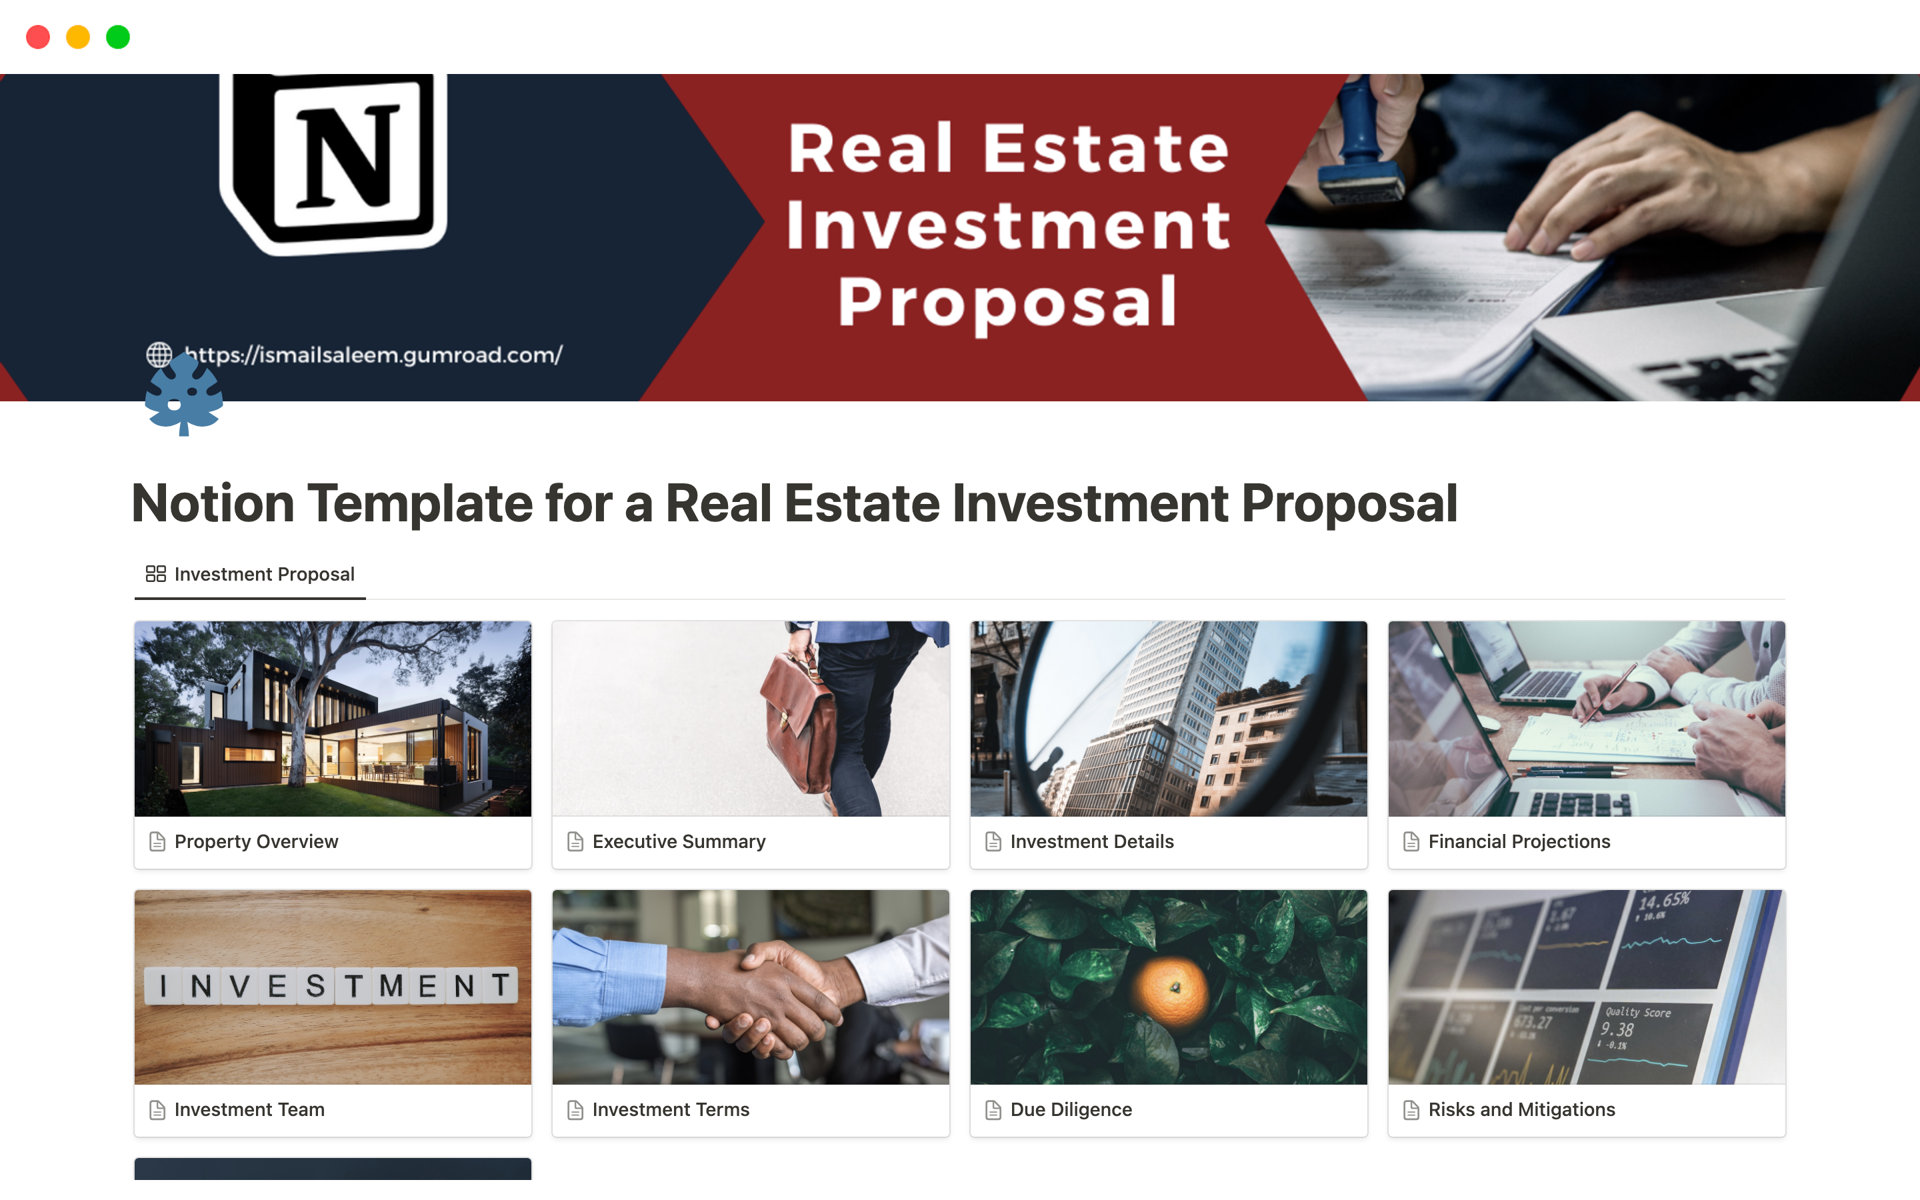 Uma prévia do modelo para Real Estate Investment Proposal